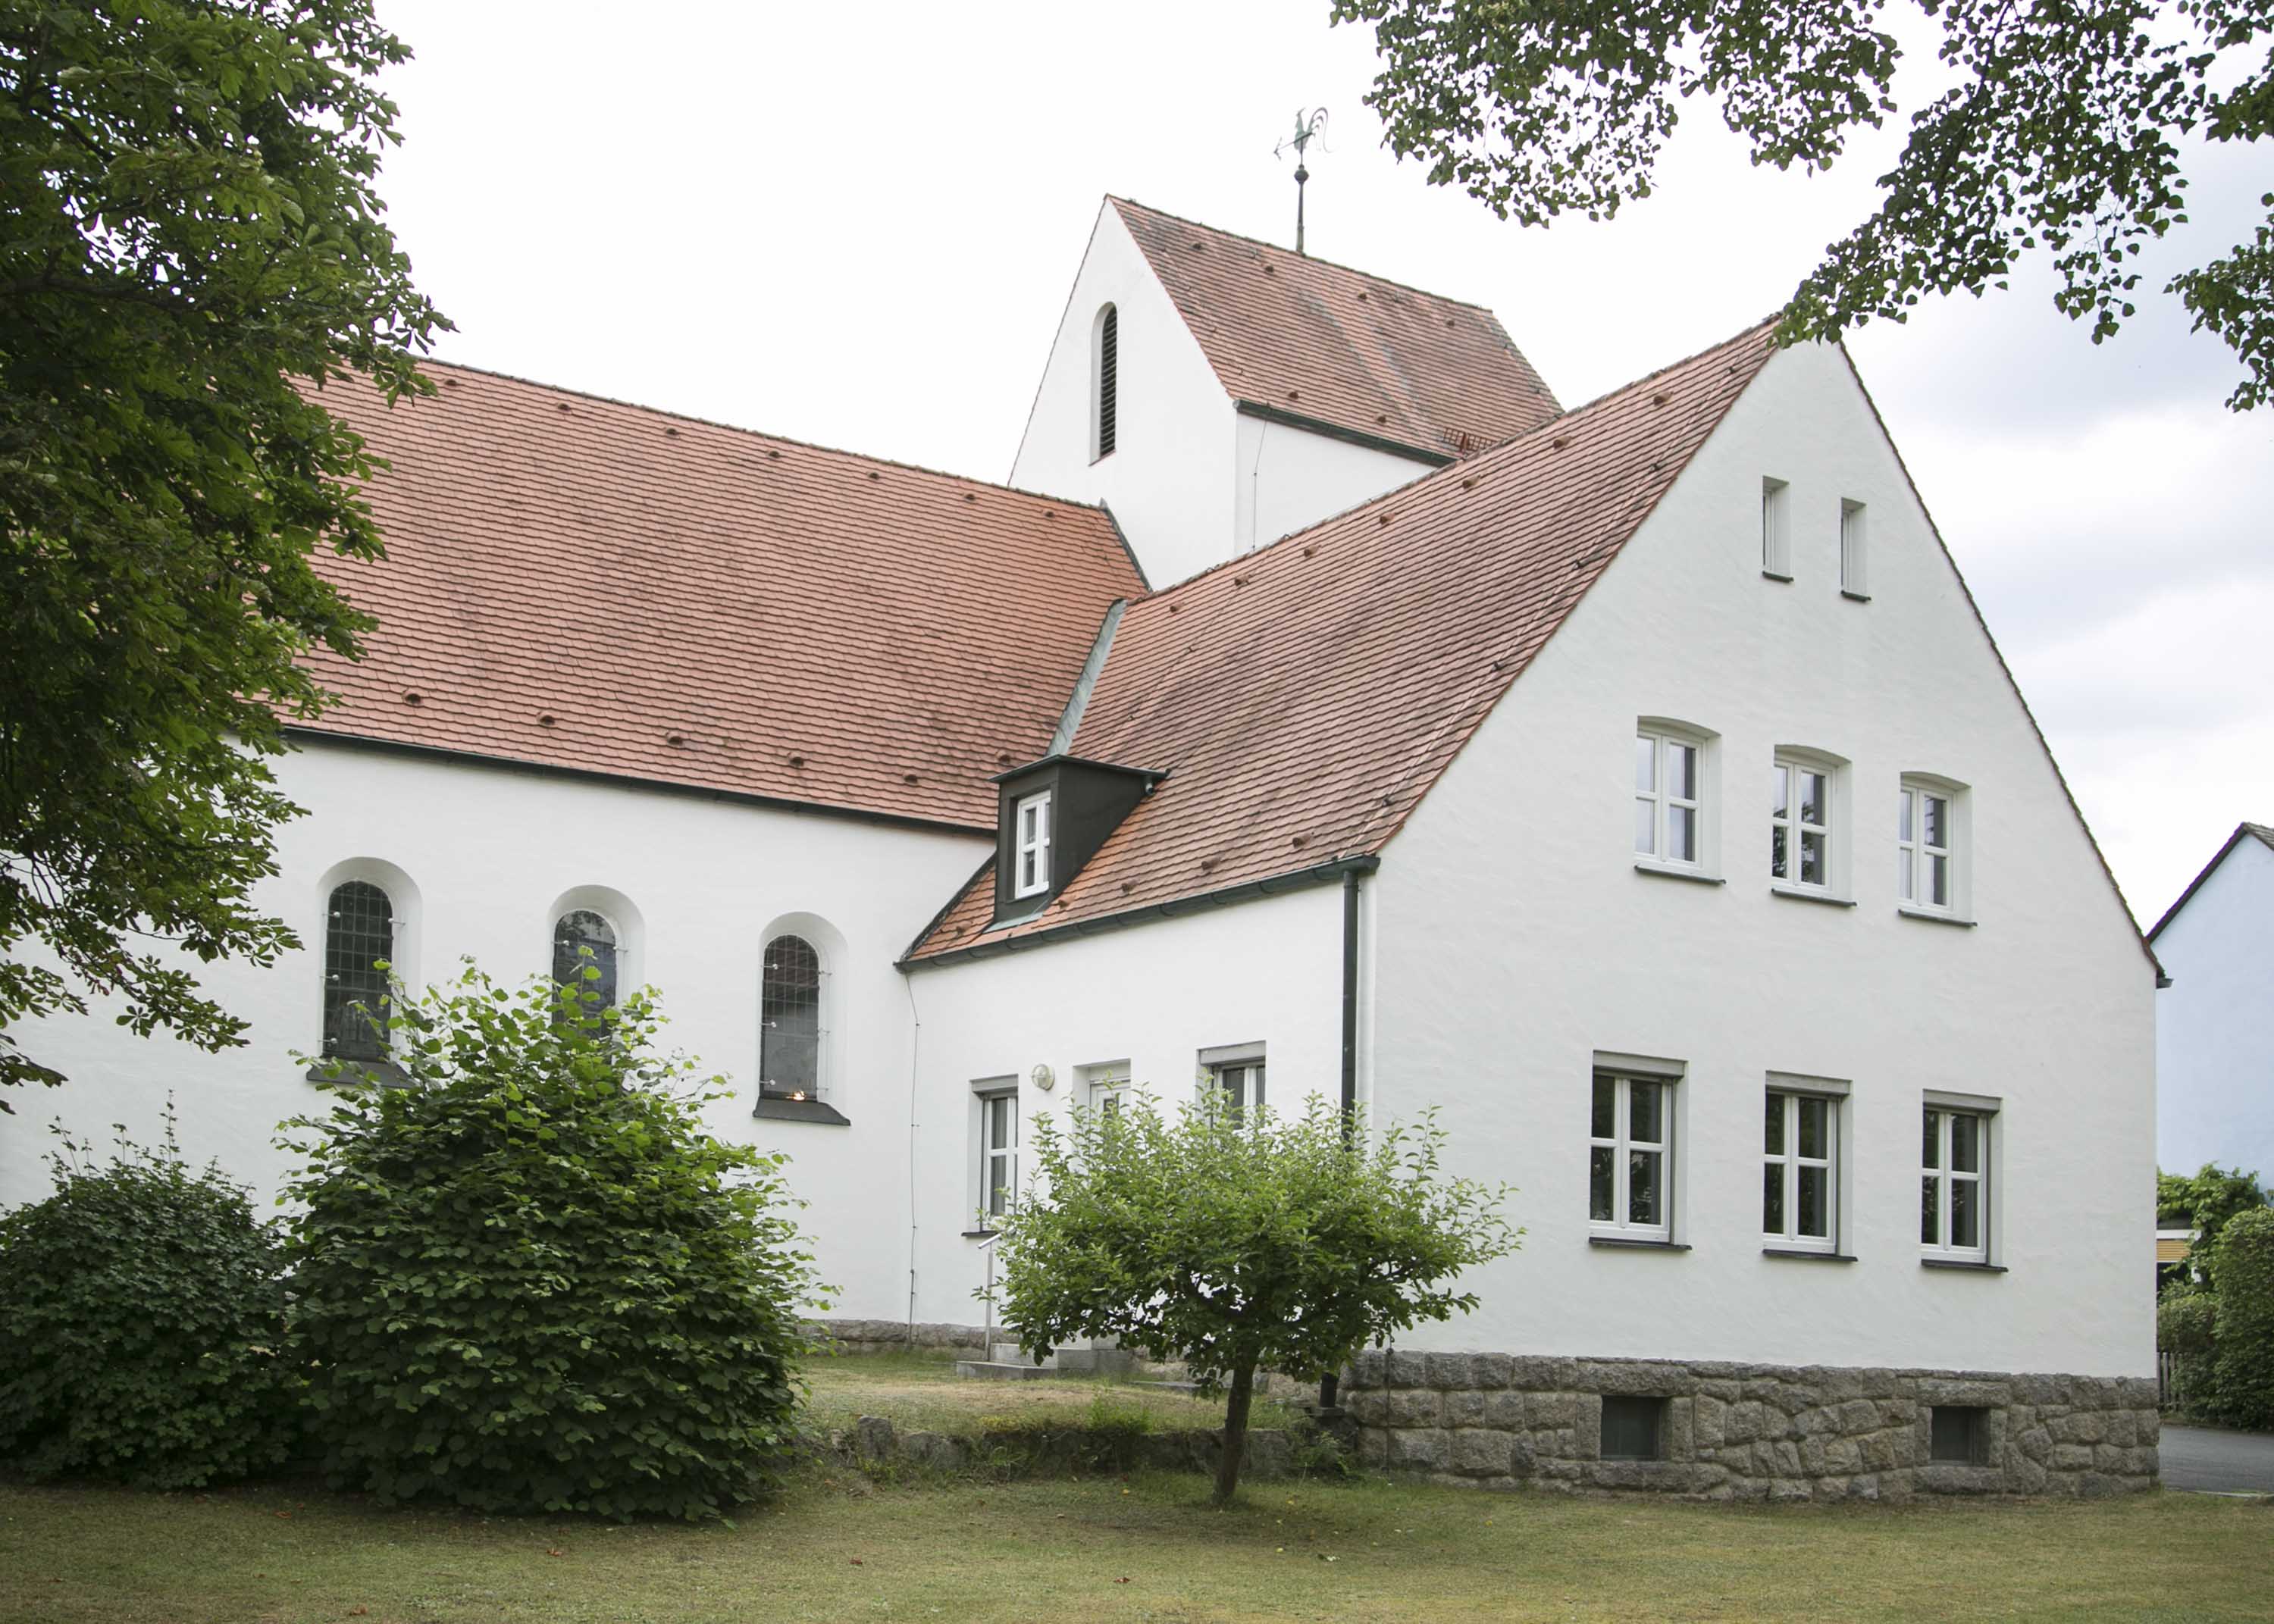 Die Erlöserkirche in Wernberg Köblitz von außen aus der Sicht von hinten.